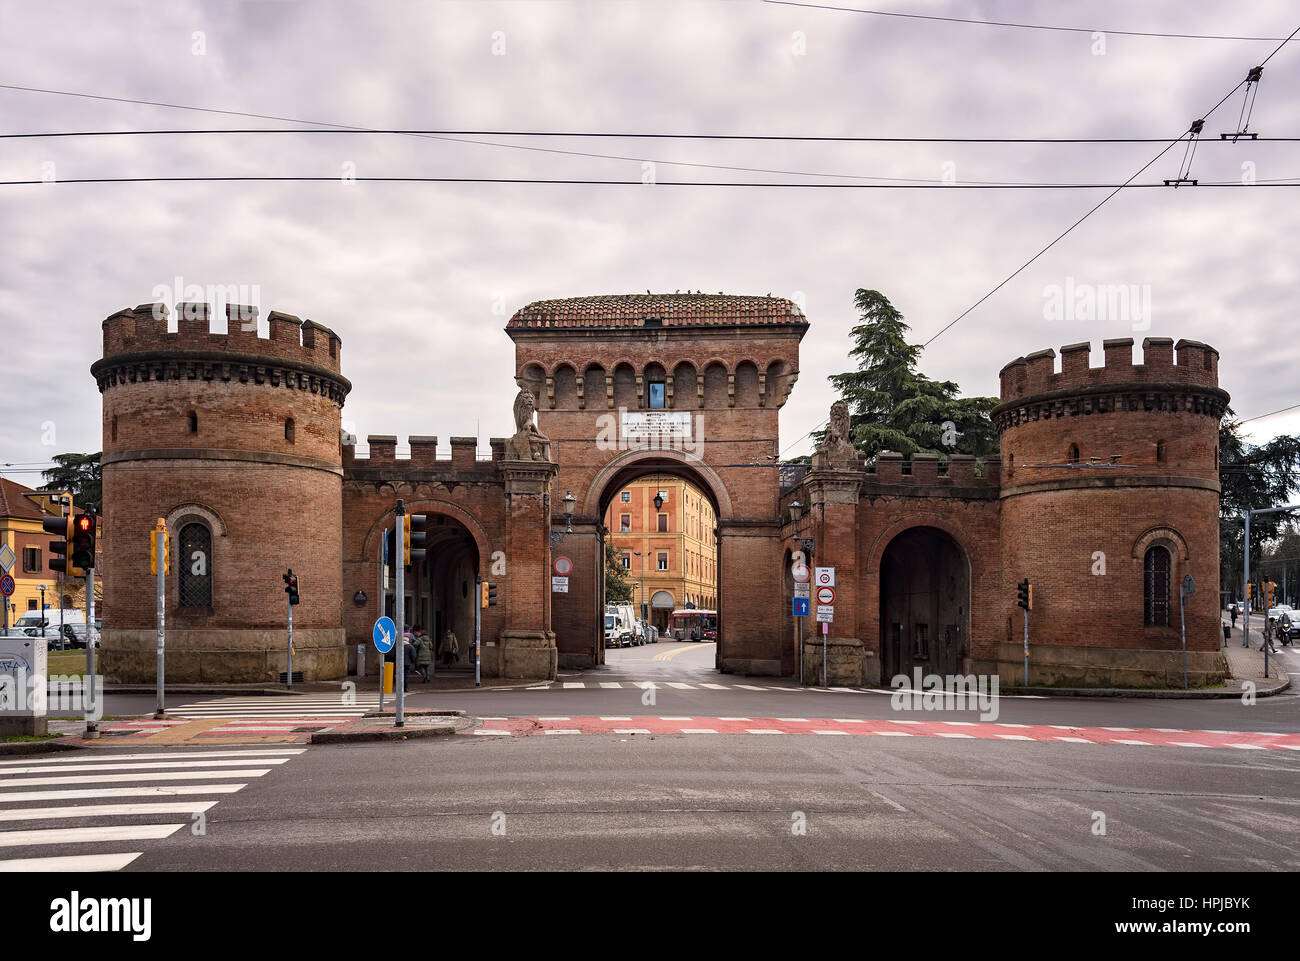 BOLOGNA, ITALY - FEBRUARY 06, 2017. The old city gate of Porta Saragozza. Stock Photo